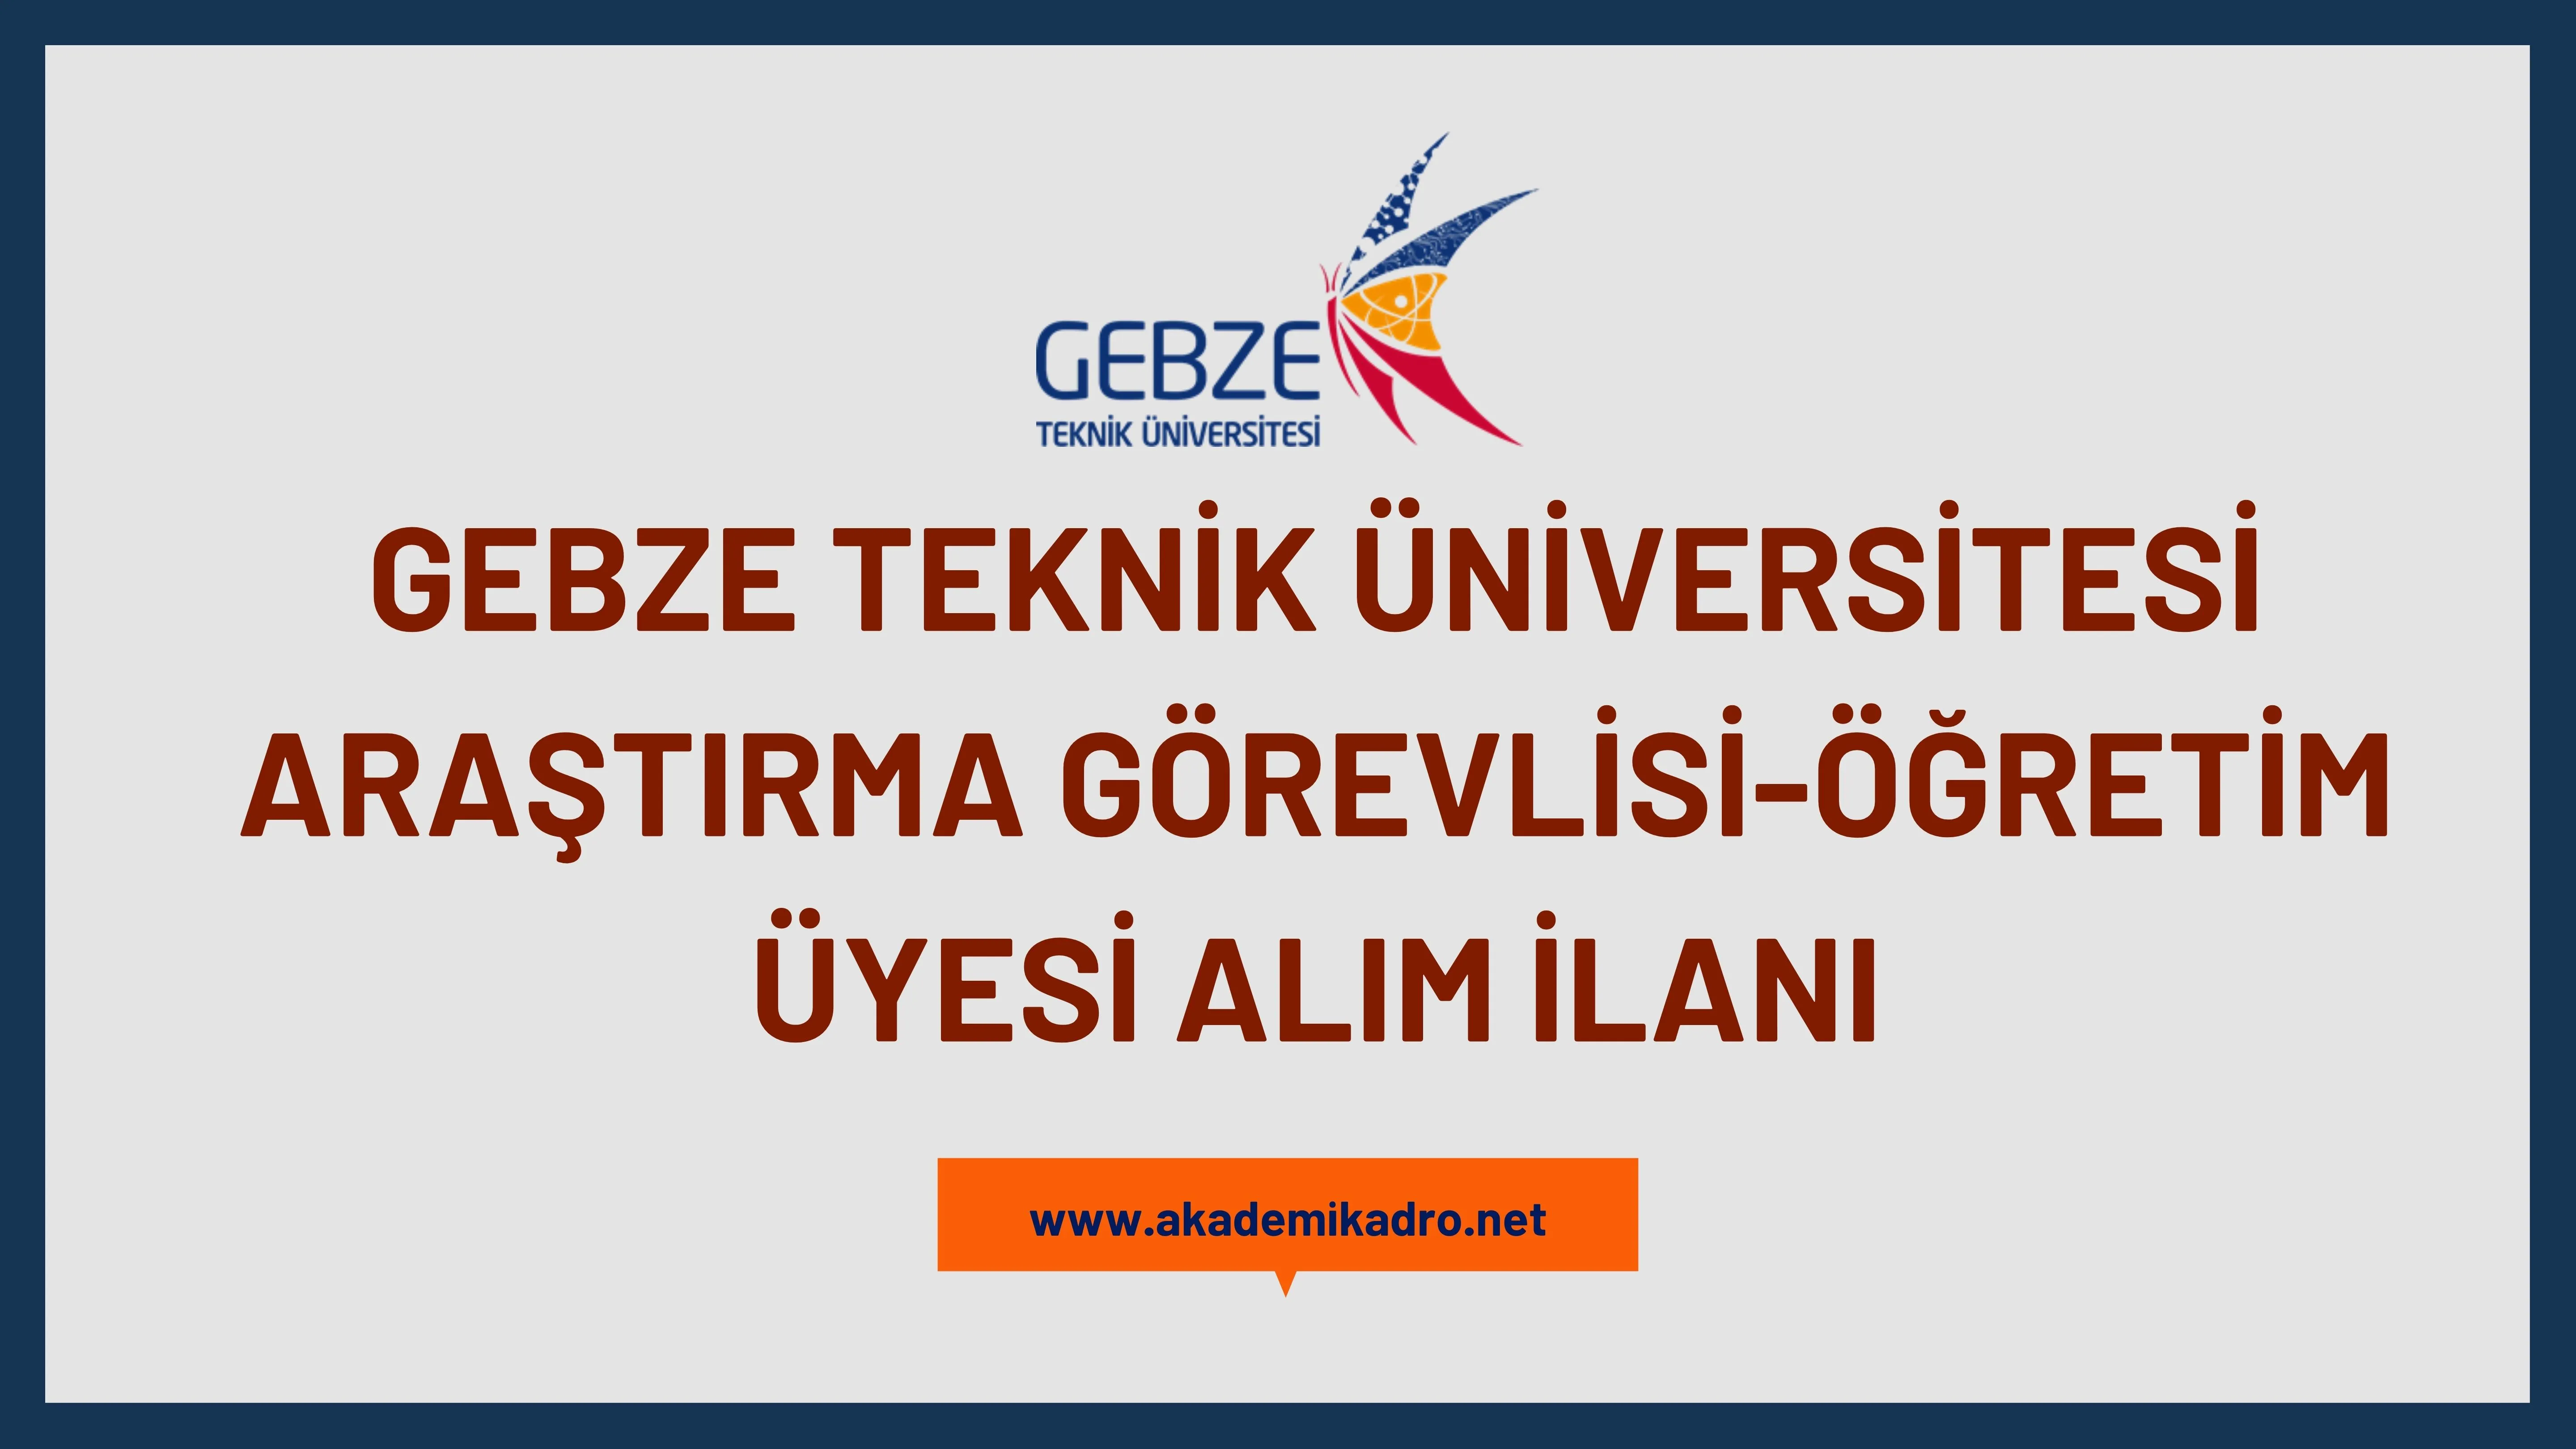 Gebze Teknik Üniversitesi 4 Araştırma görevlisi ve 2 Öğretim üyesi alacak.